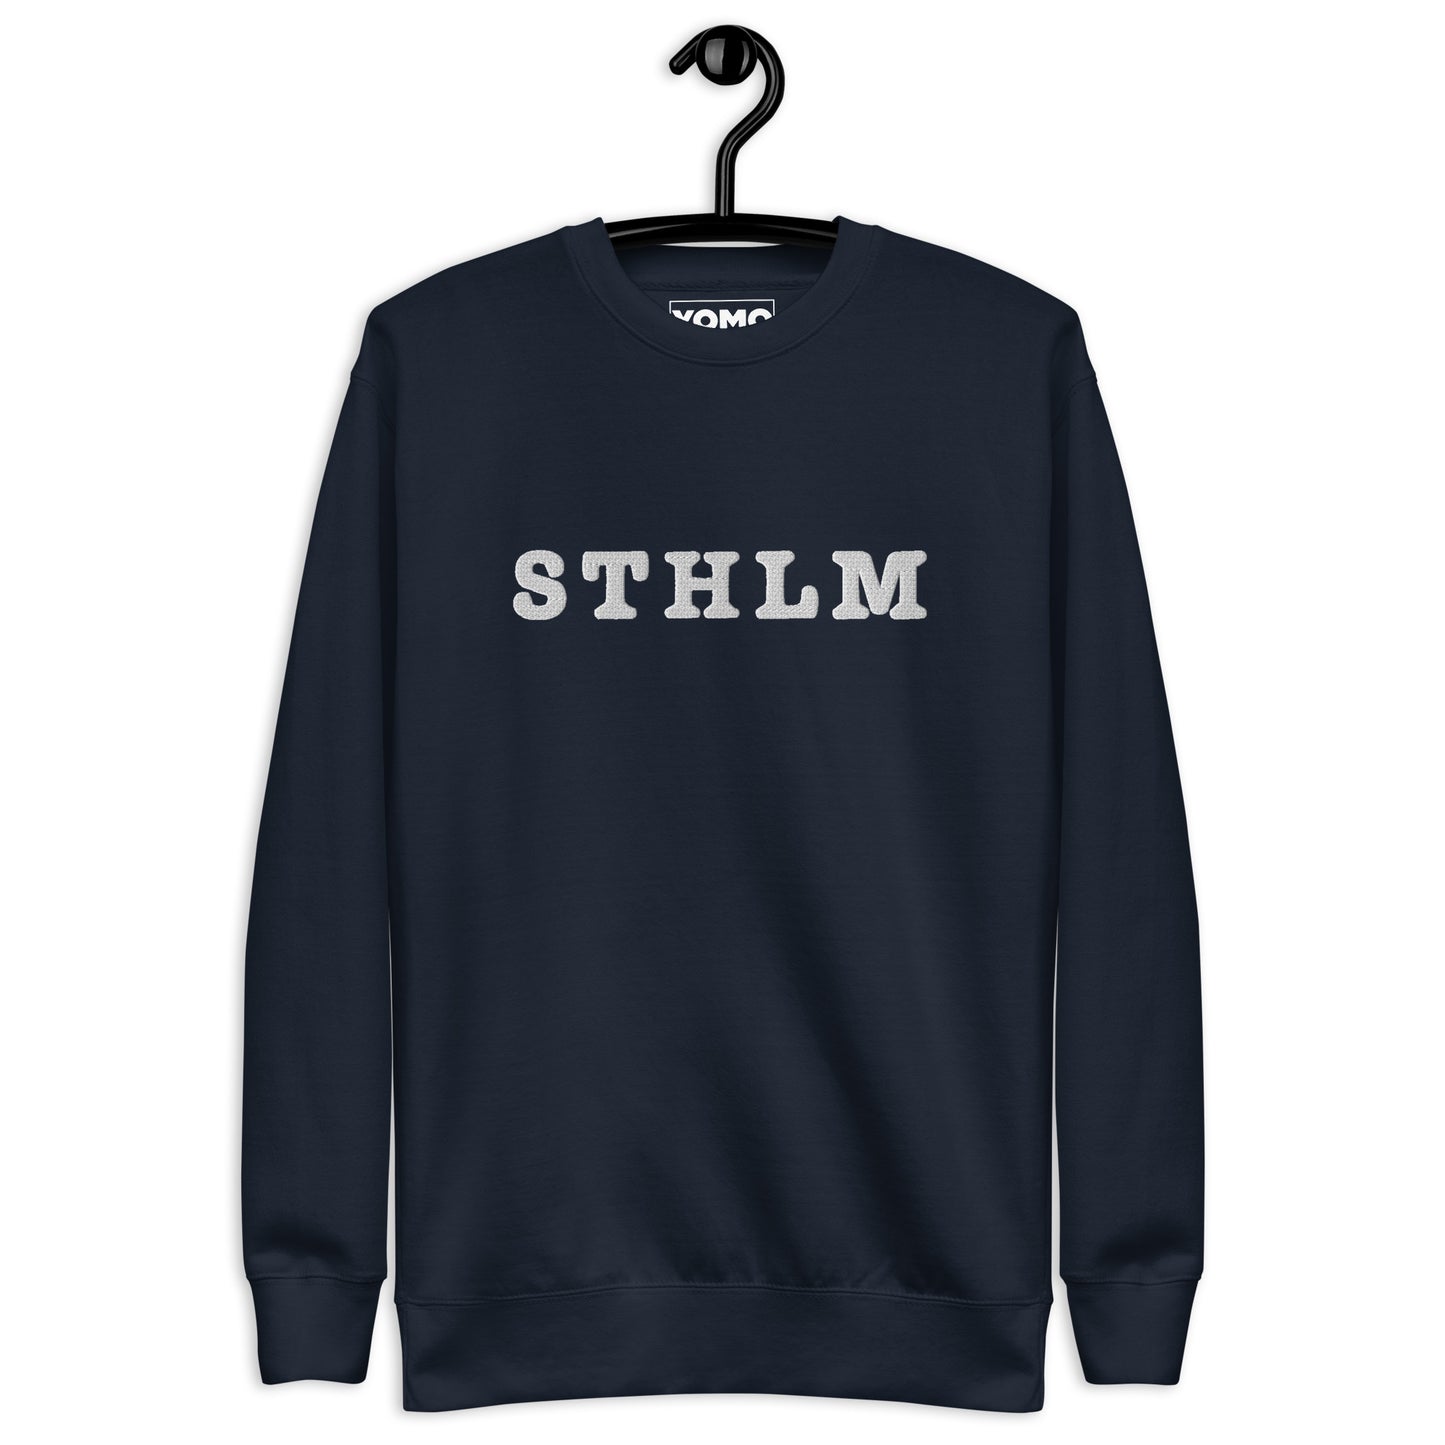 STHLM - Premium Unisex Sweatshirt/Collegetröja med vit brodyr - 4 färger